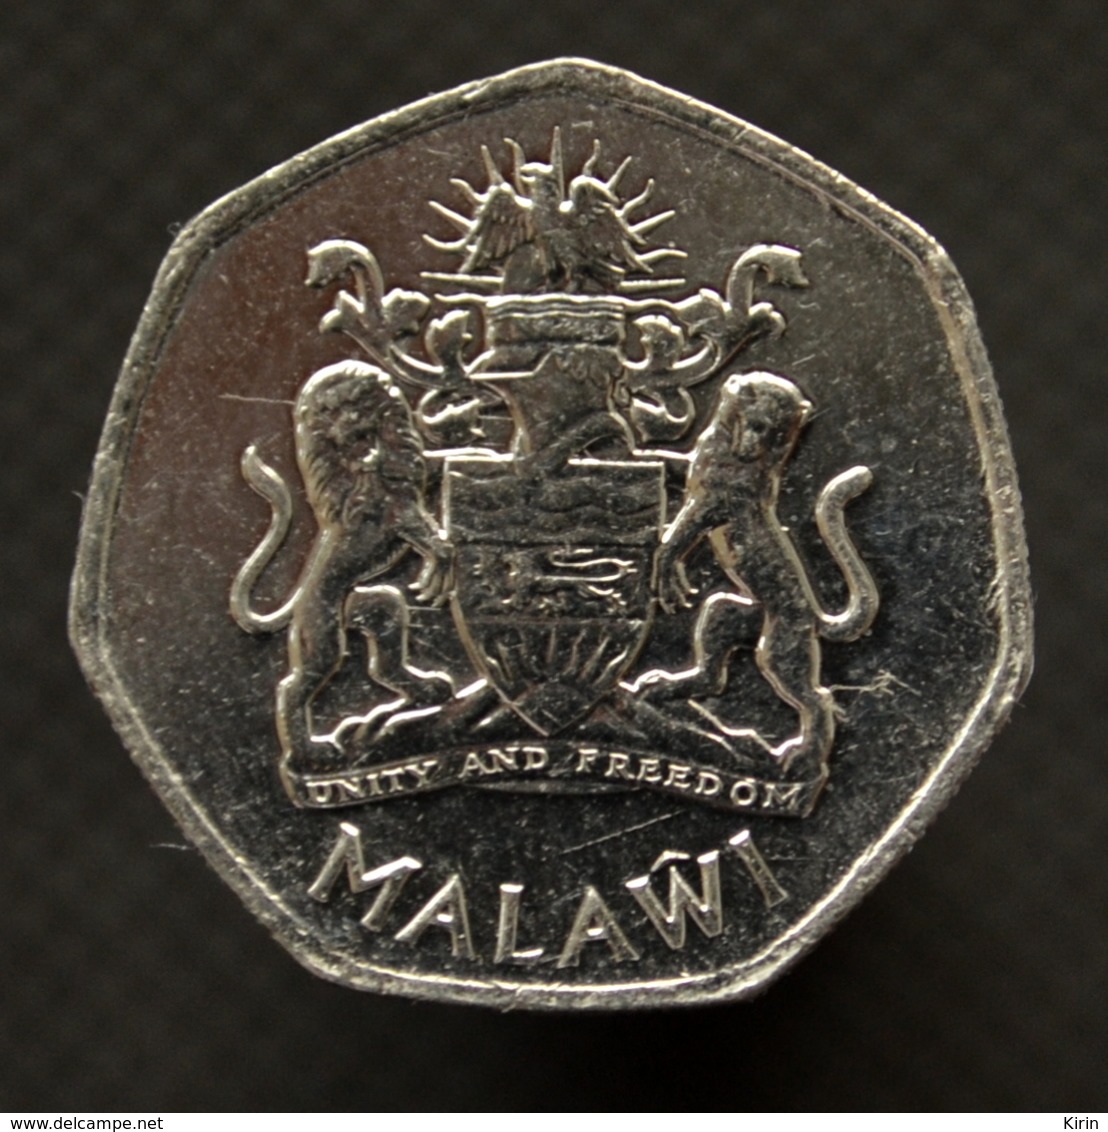 Malawi 5 Kwacha 2015.  Km213. Africa Coin - Malawi